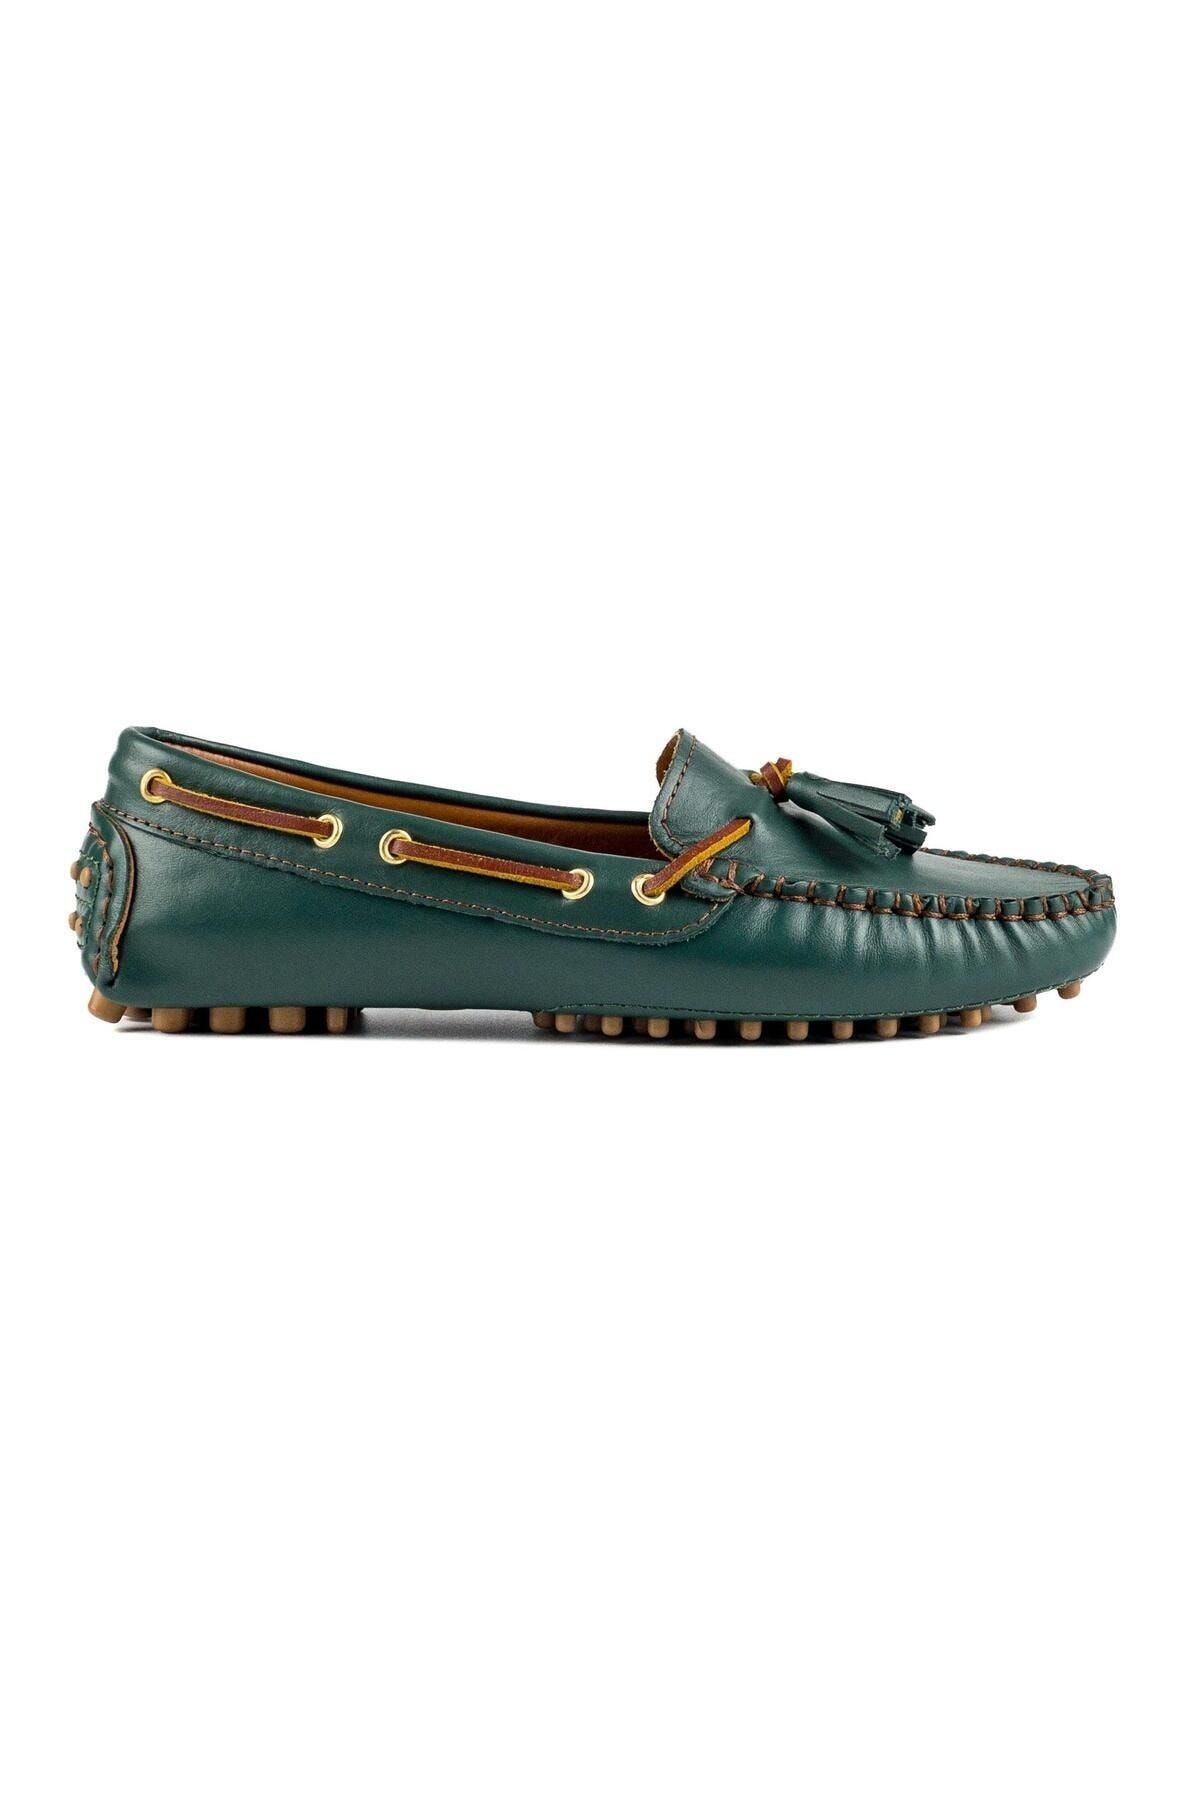 TEZCAN KUNDURA Samos Hakiki Yeşil Deri Loafer Günlük Kadın Ayakkabı